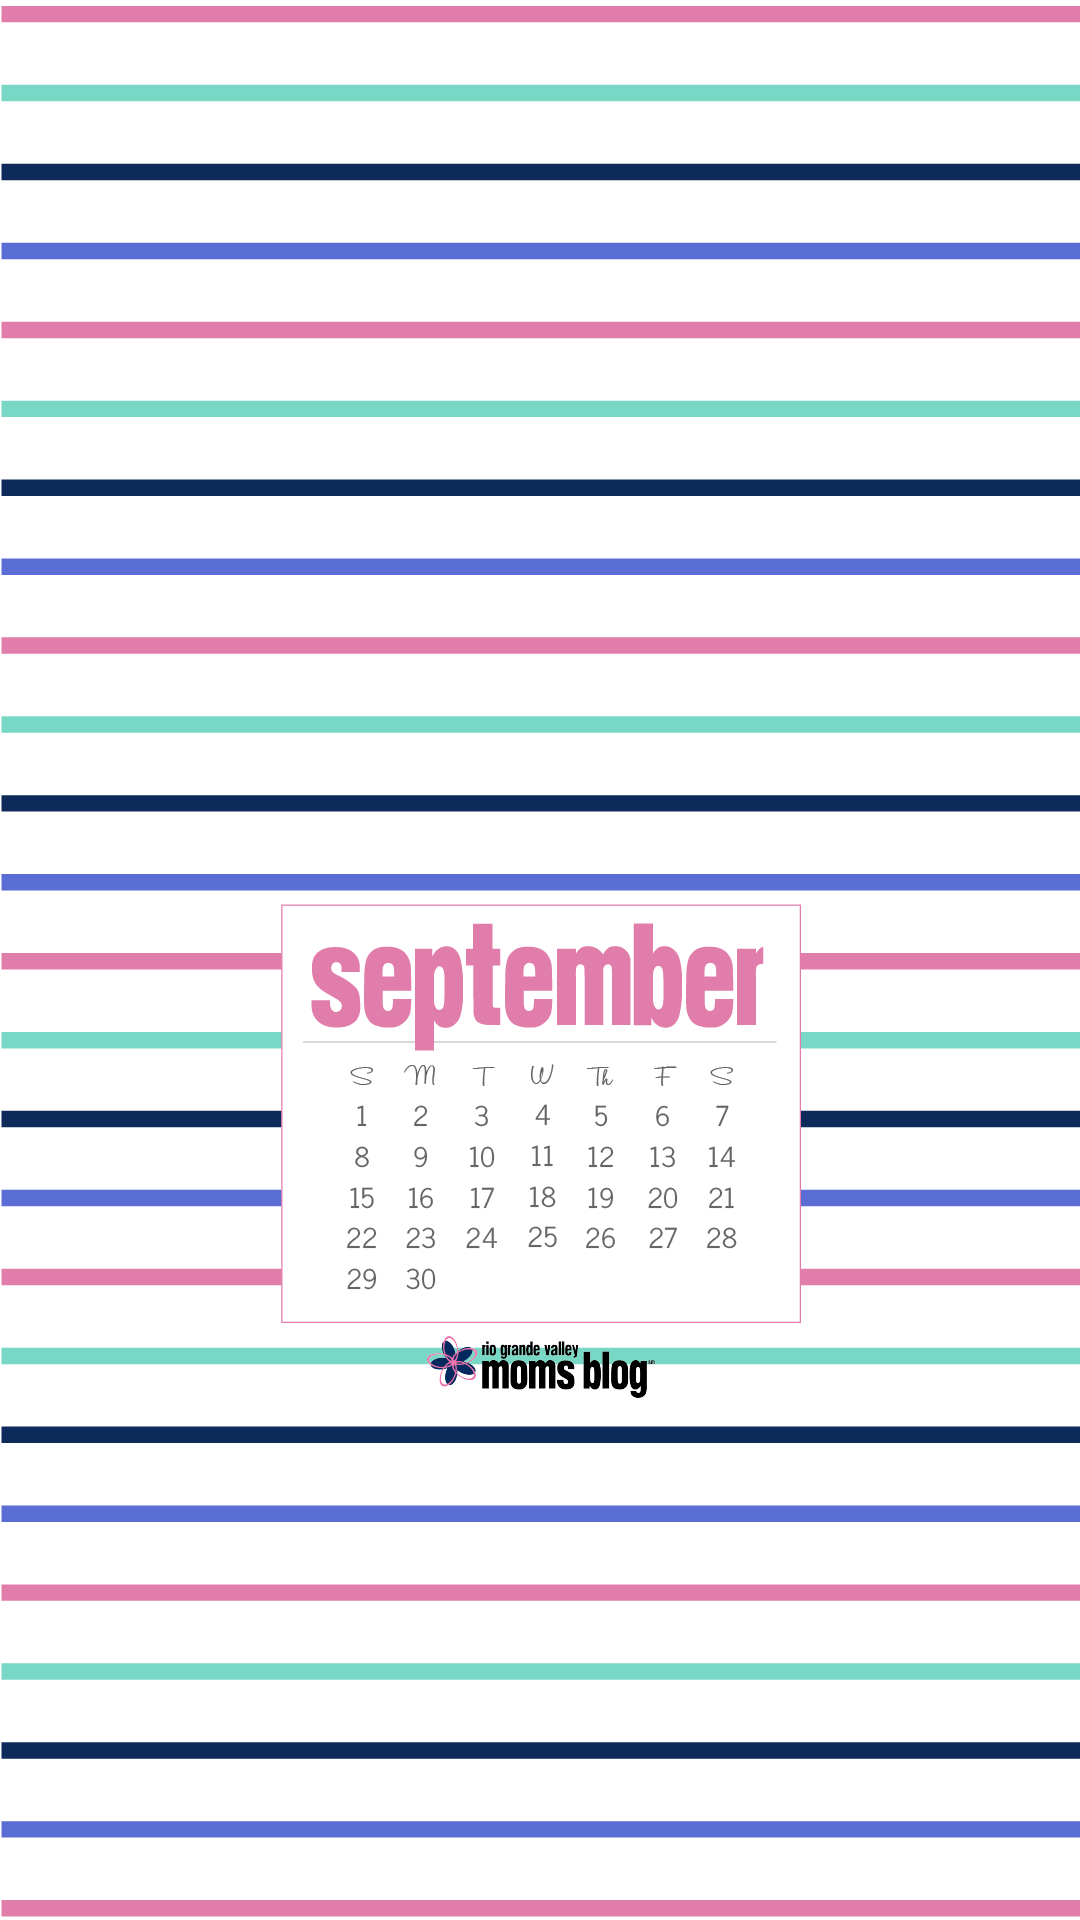 September 2019 Phone Background Stripes